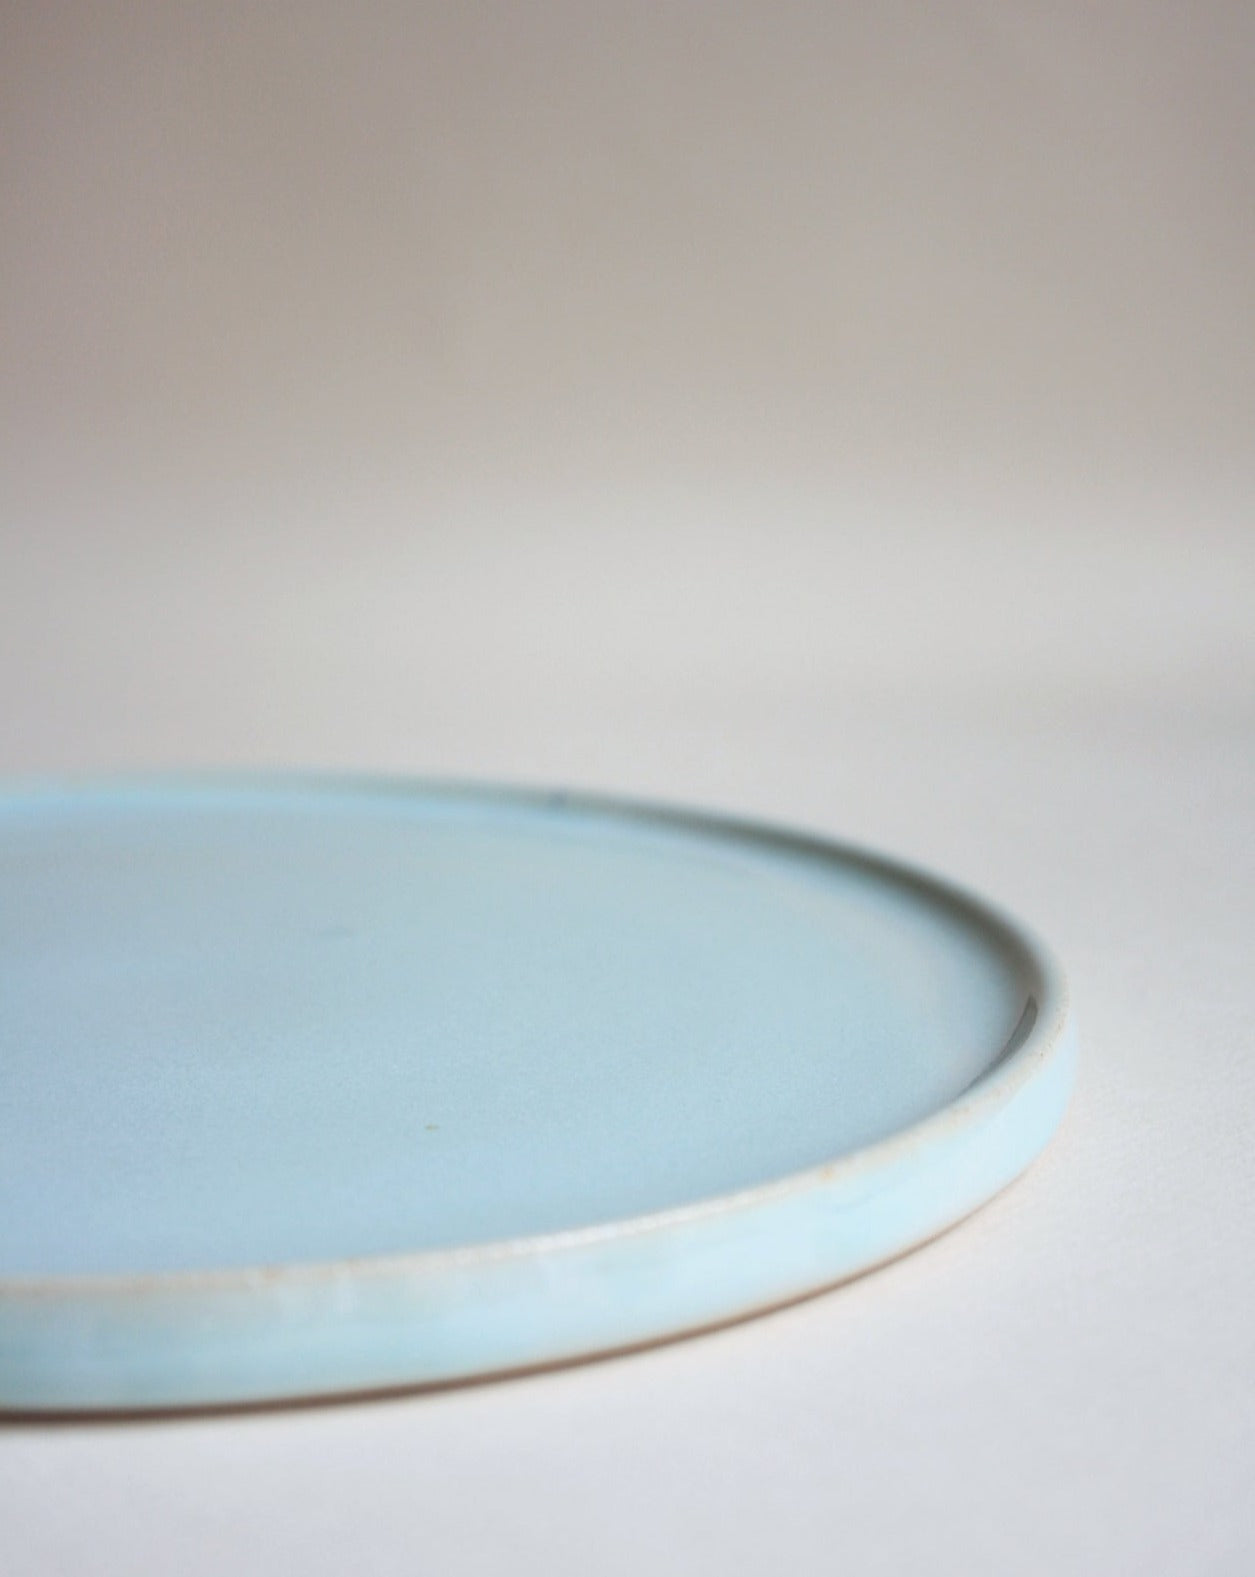 andrea frieling ceramics breakfast plate